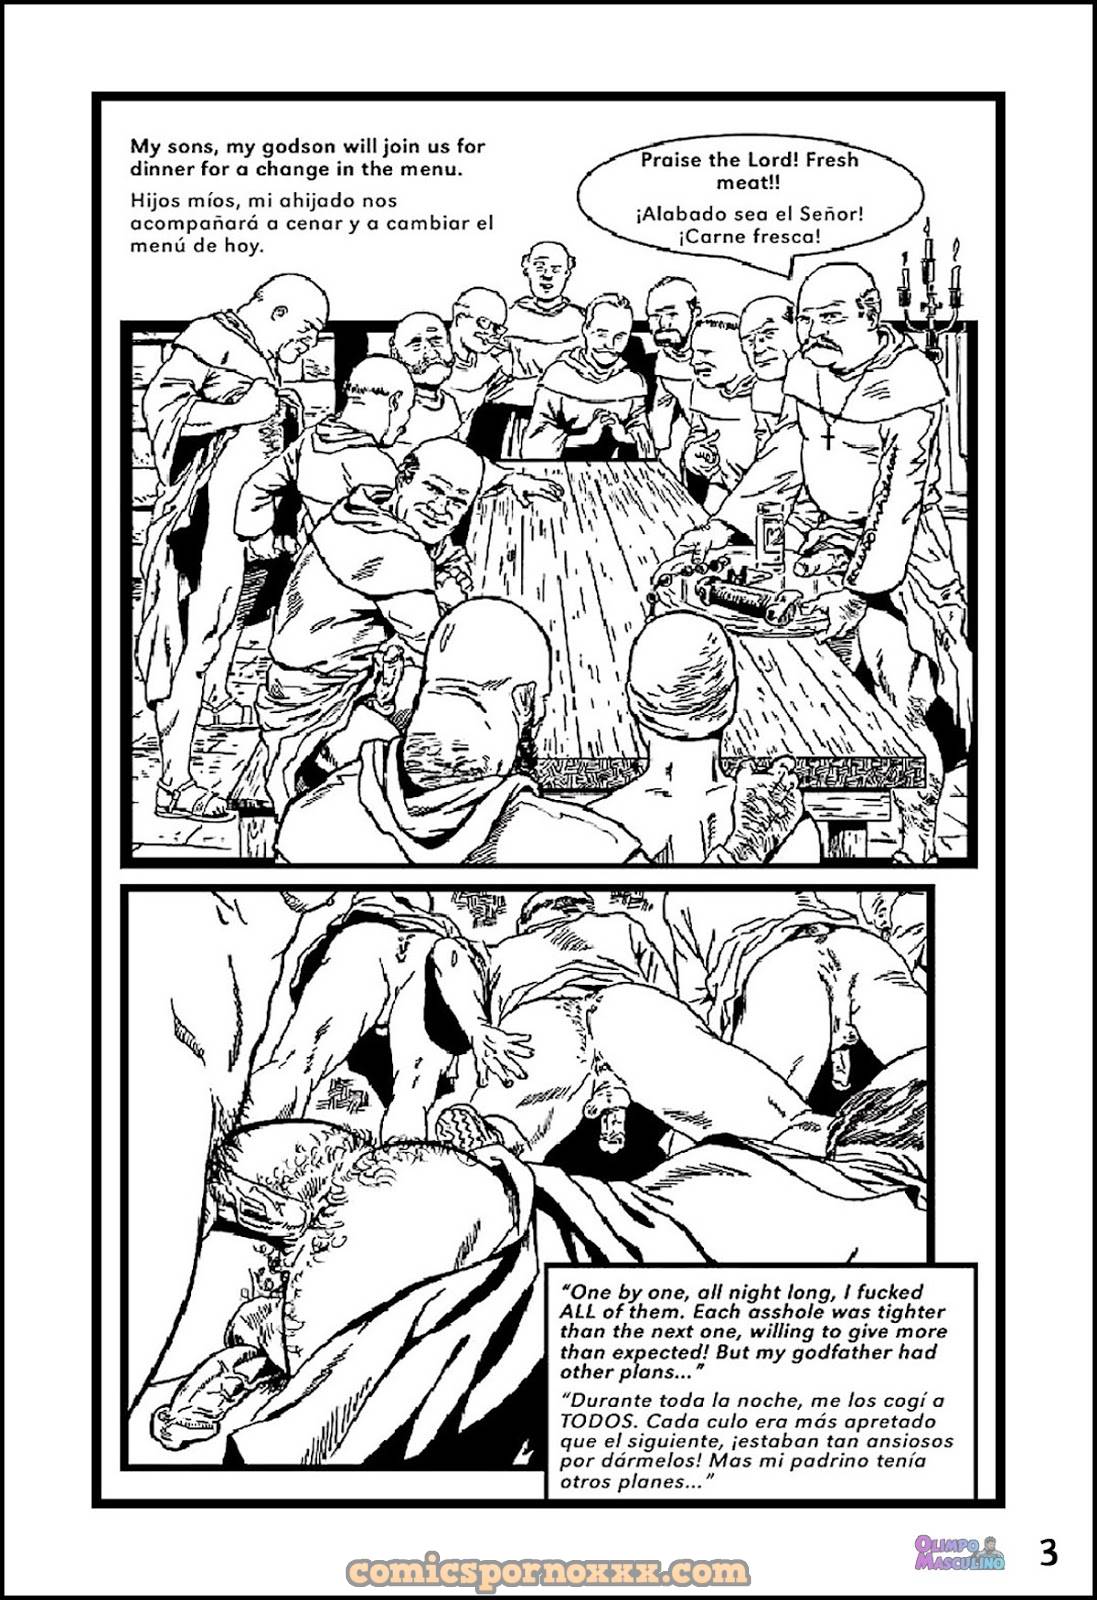 El Chico Rebelde #2 (Rolando Mérida) - 3 - Comics Porno - Hentai Manga - Cartoon XXX